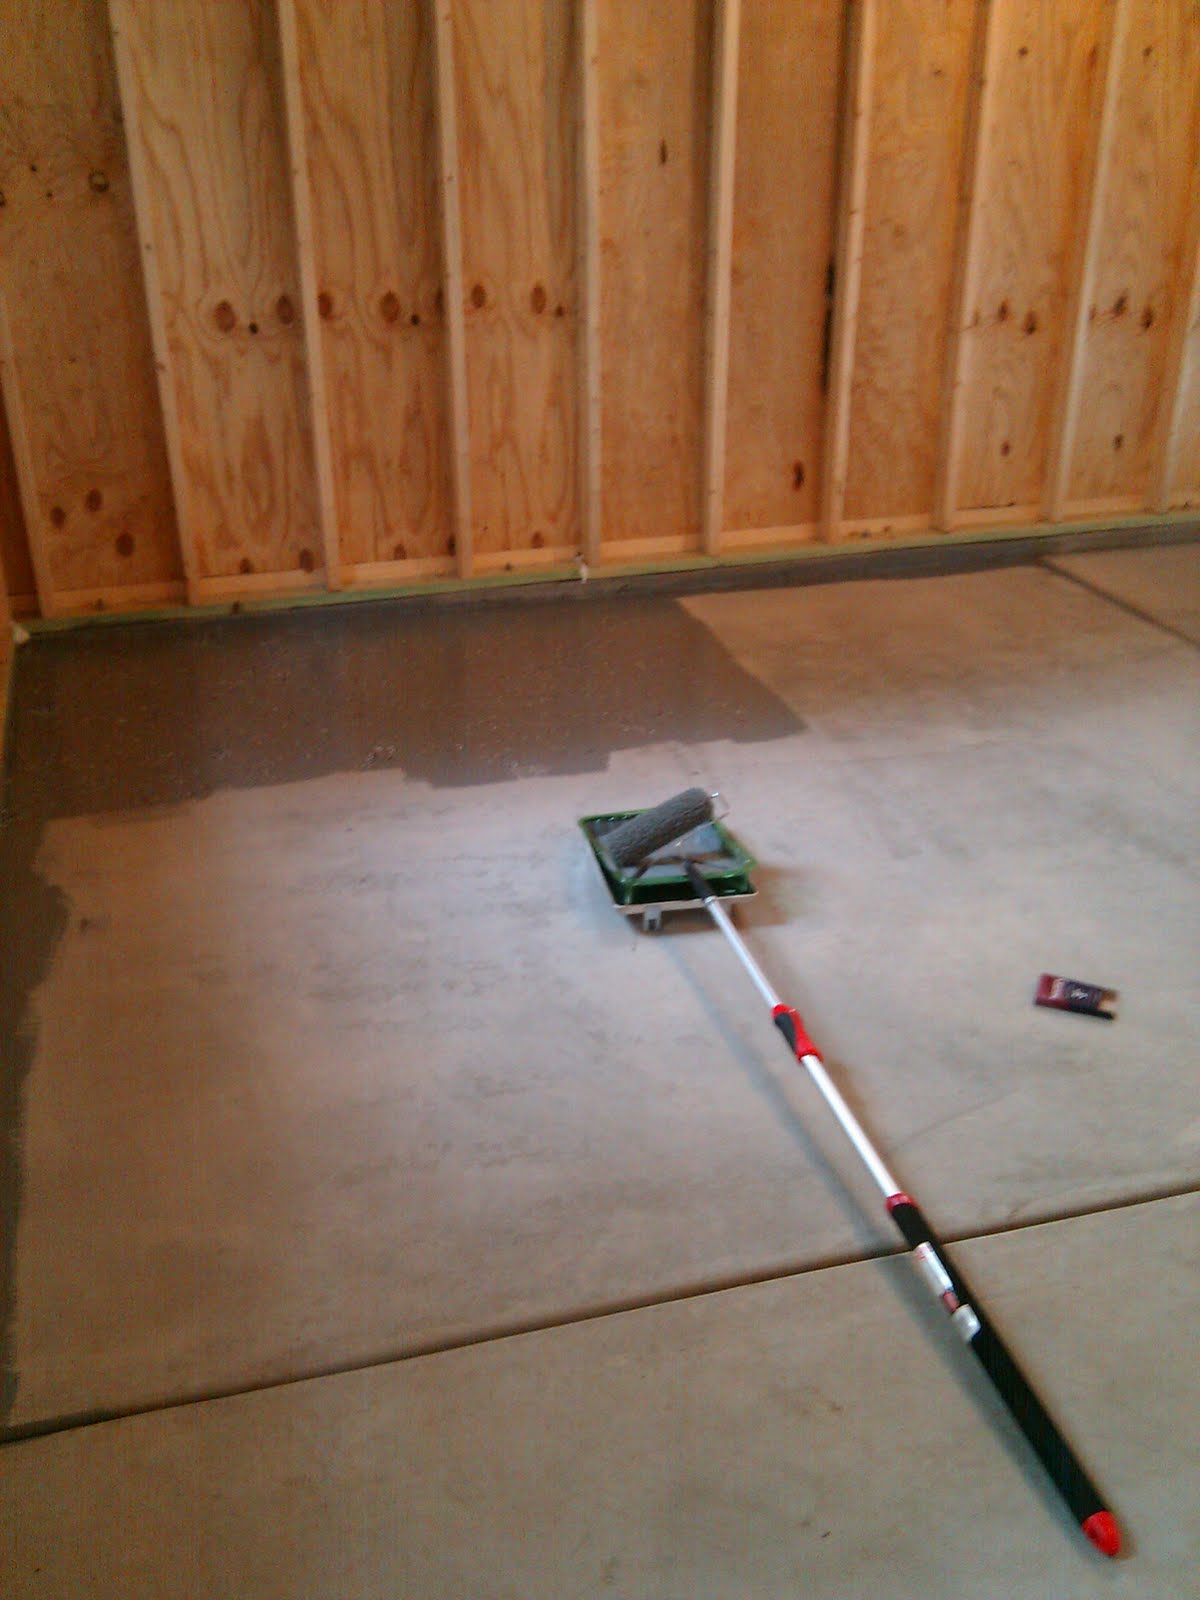 Garage Floor - DIY Epoxy Floor Kit from Rust-oleum